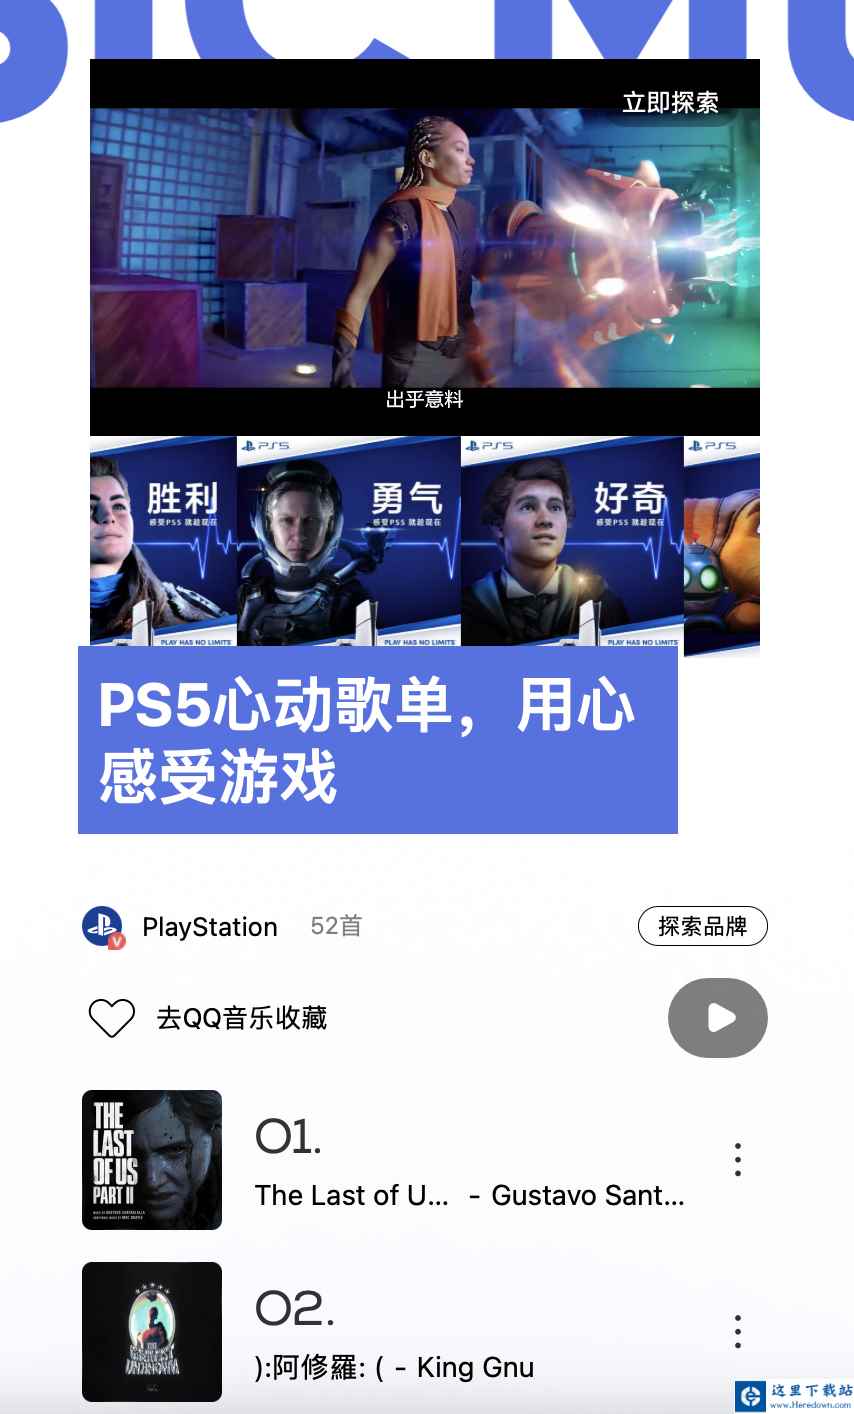 索尼 PlayStation 联动 QQ 音乐推出“PS5 心动歌单”，收录《最终幻想 16》等游戏原声